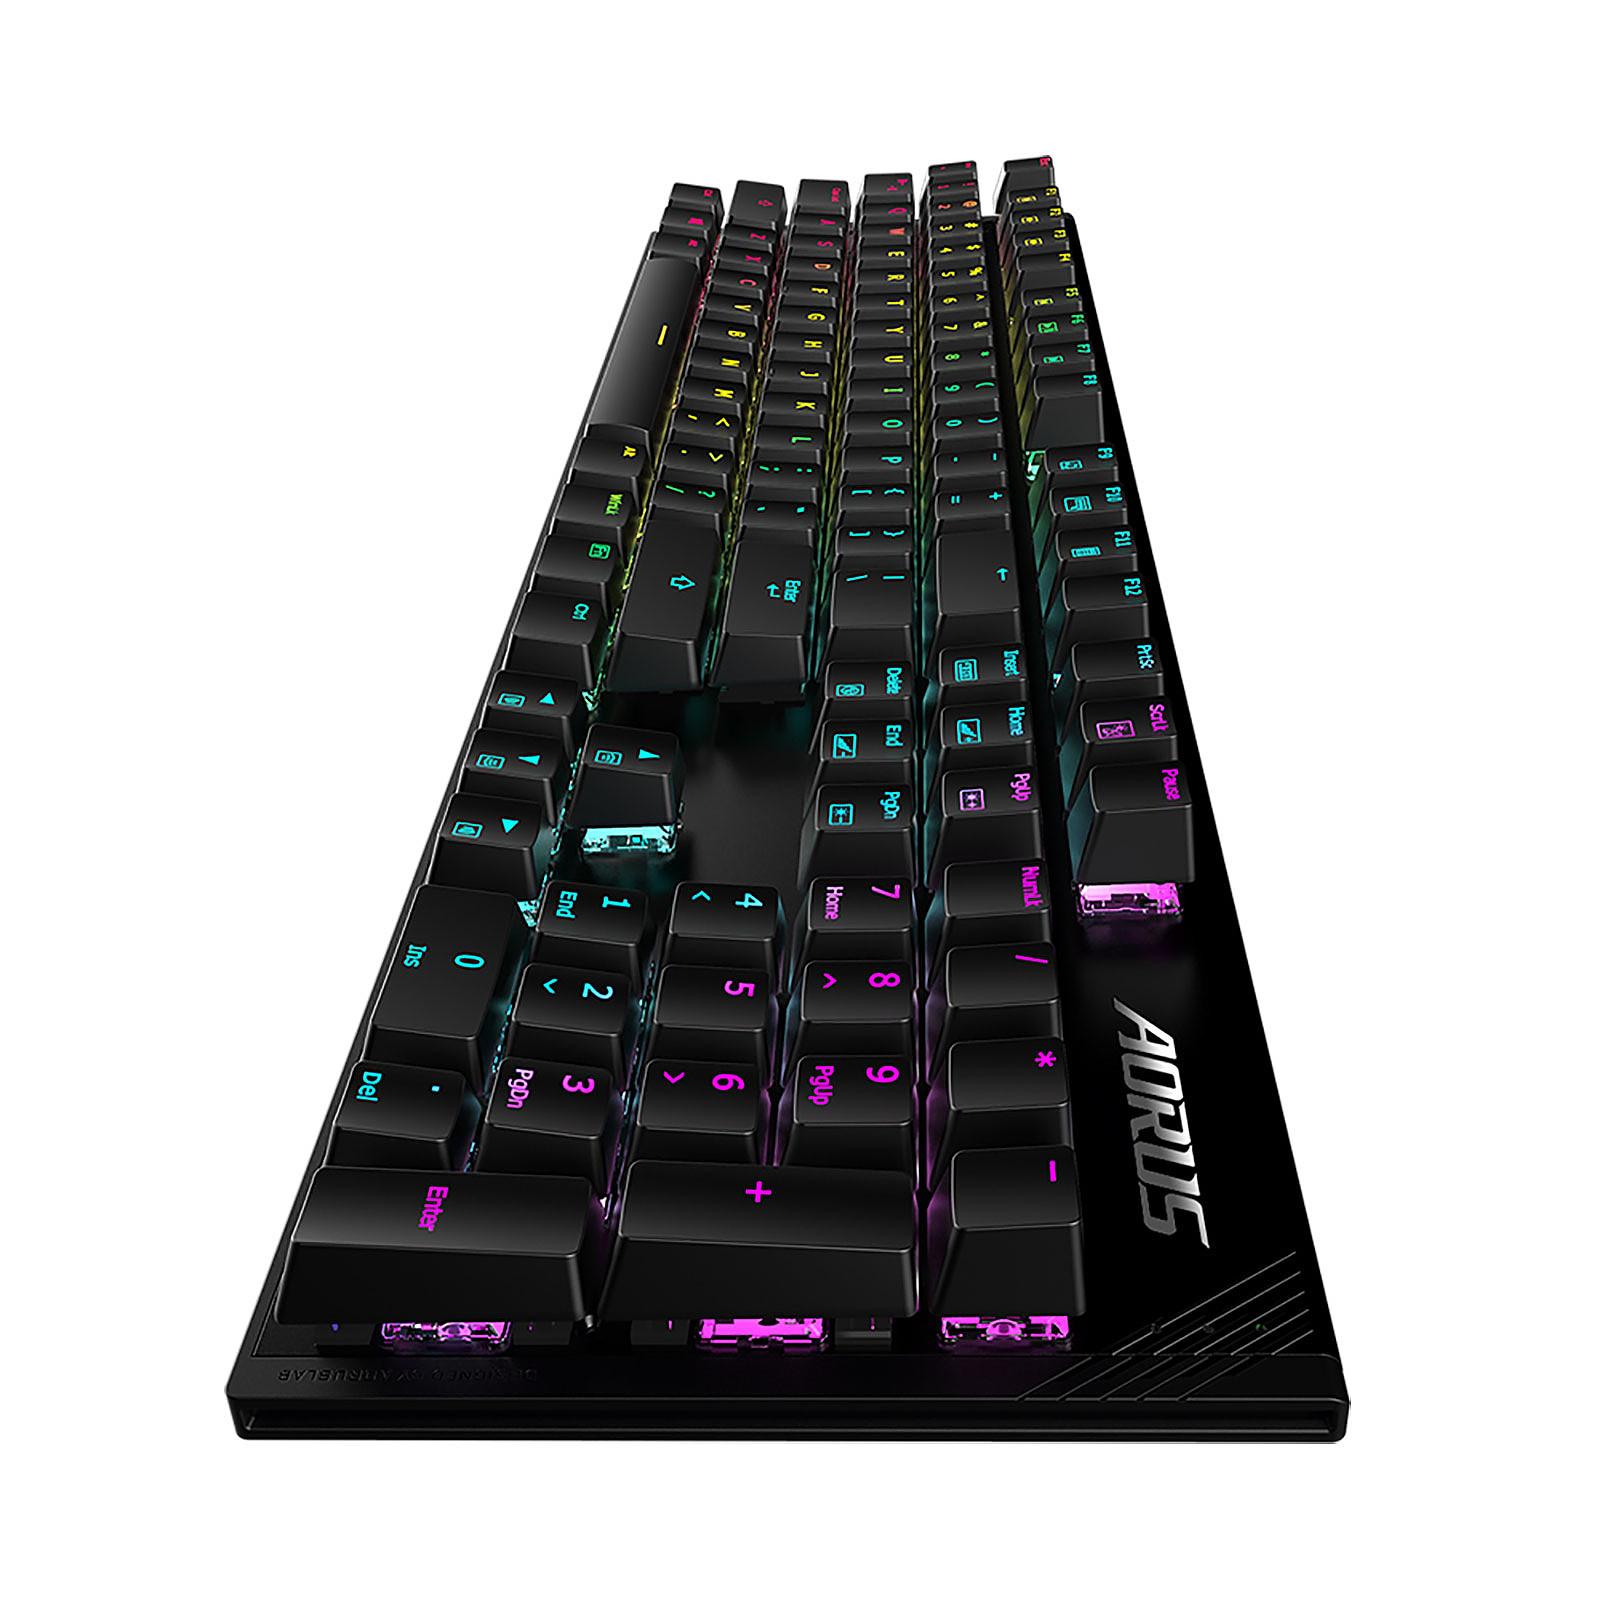 GIGABYTE Aorus K1 Mechanical Gaming Keyboard